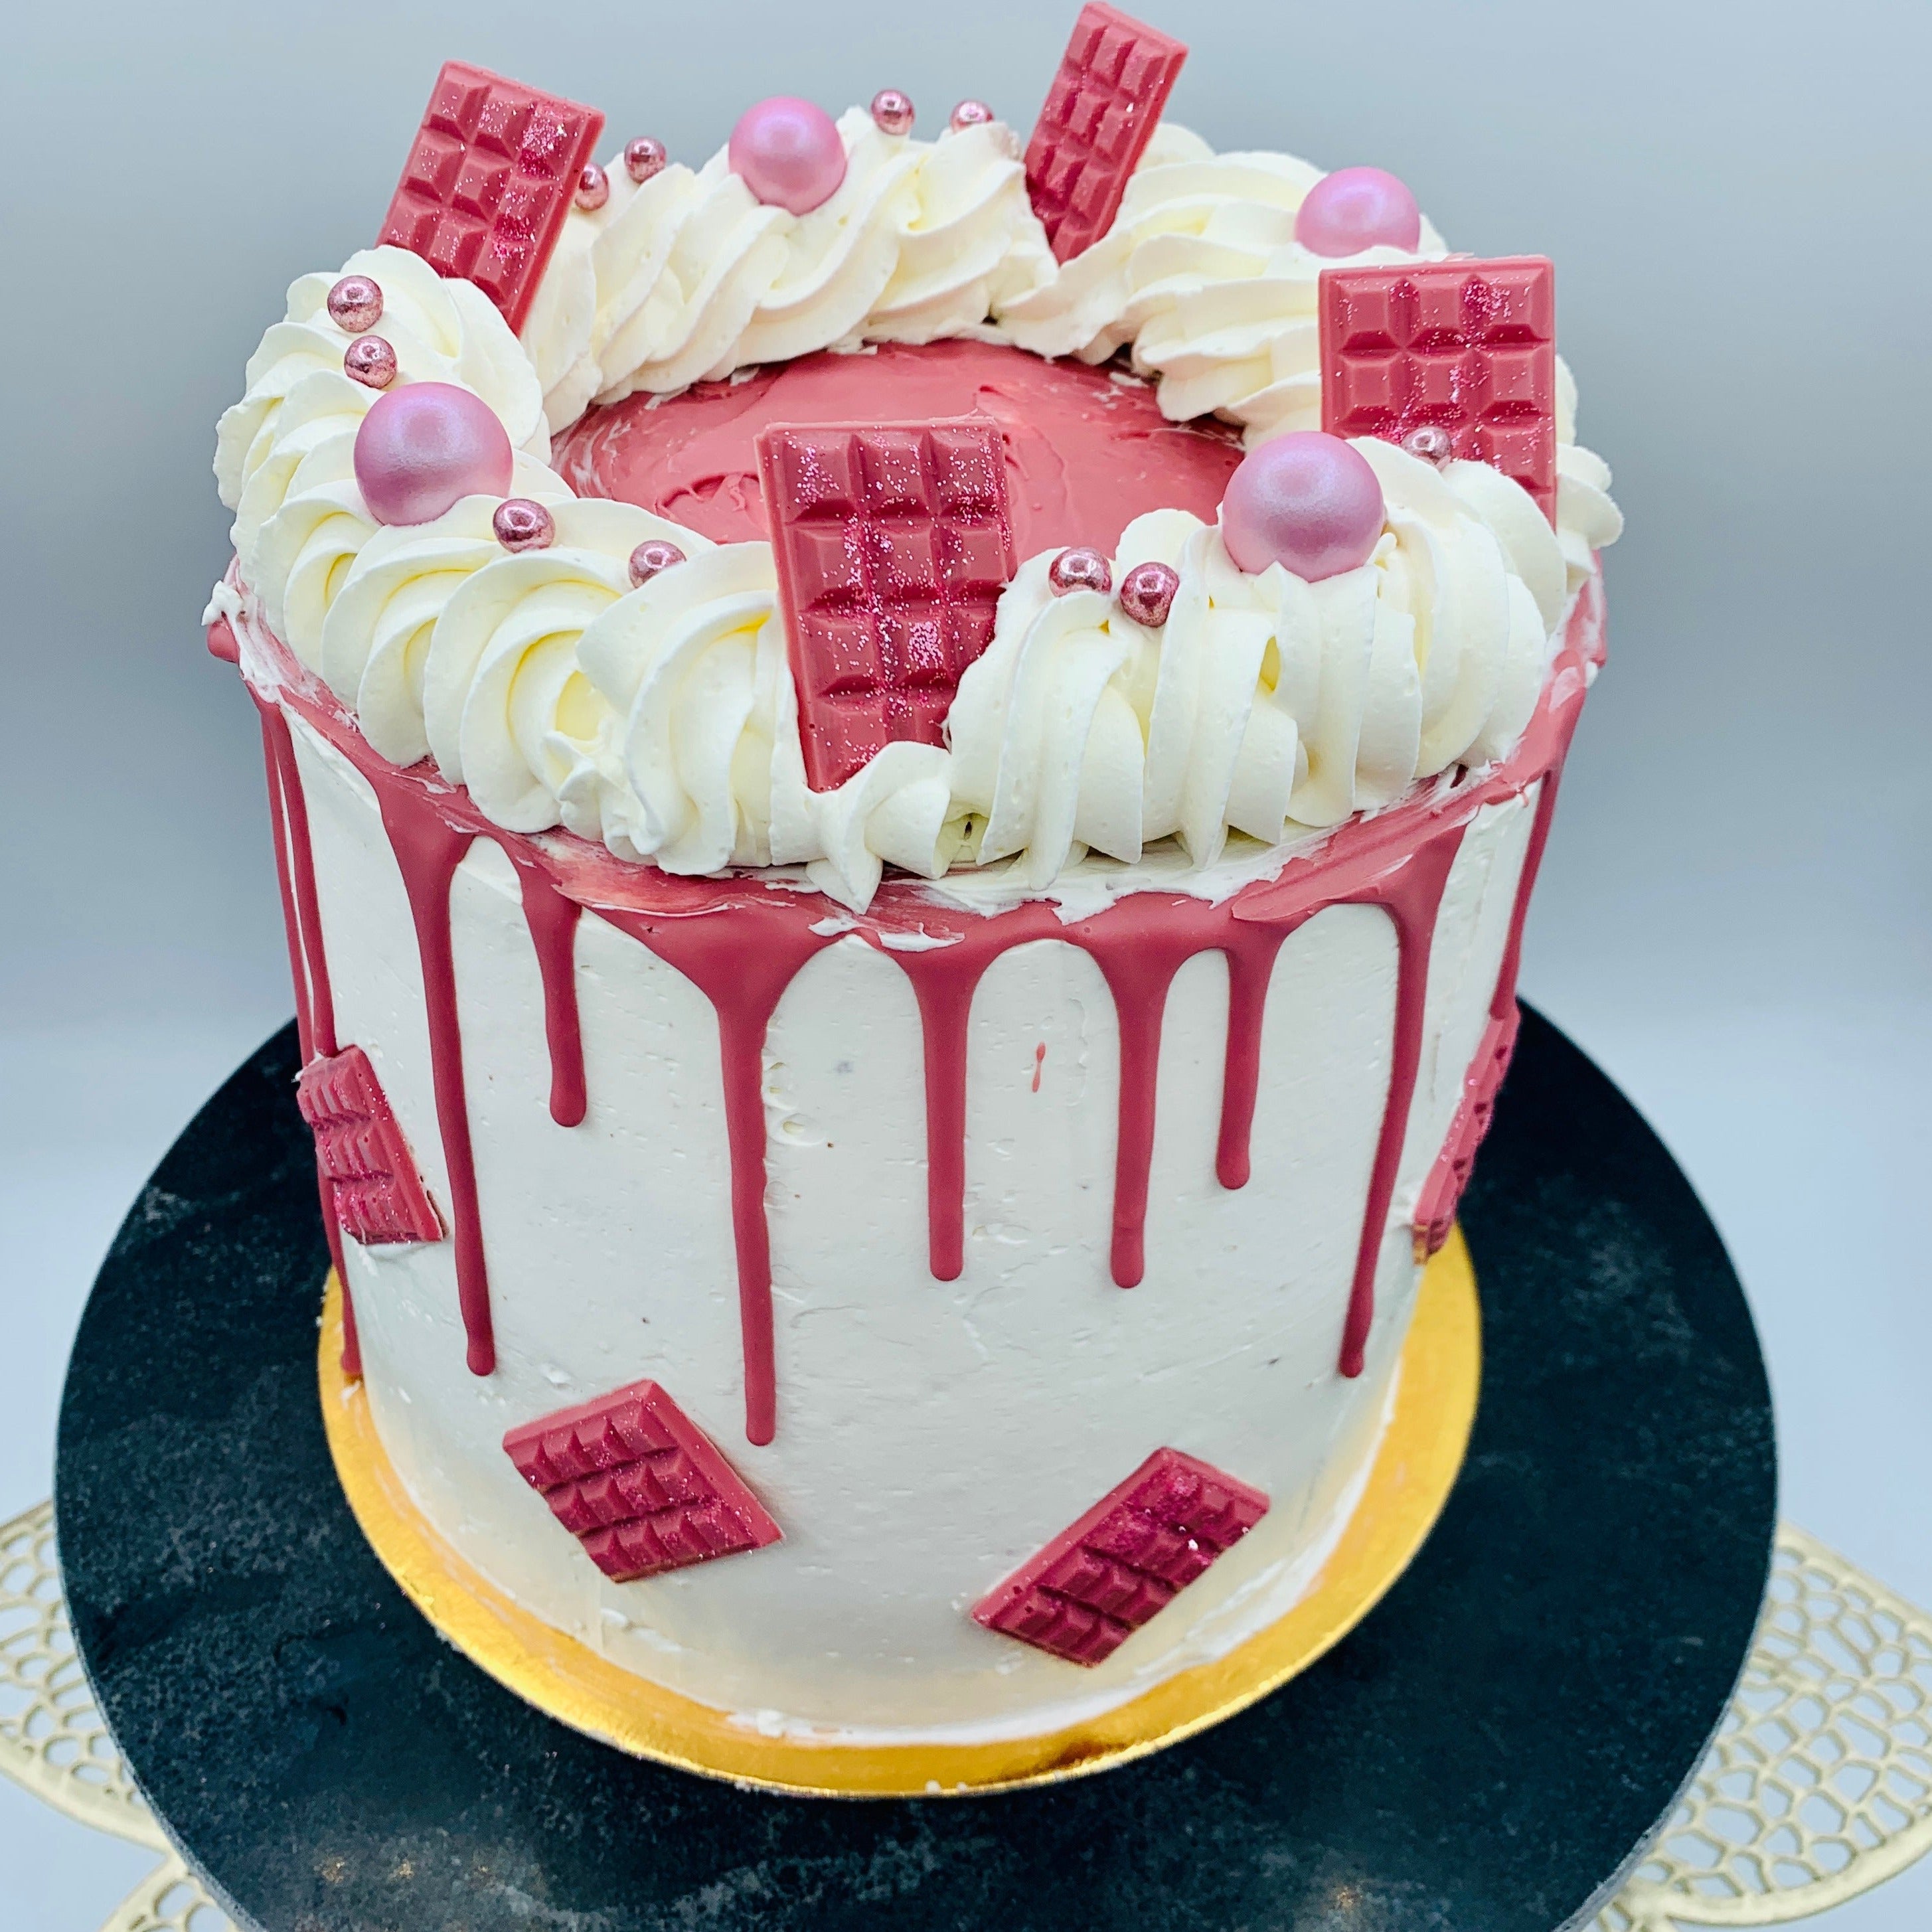 Compra Tarta drip cake chocolate rubí – Nurita Cakery